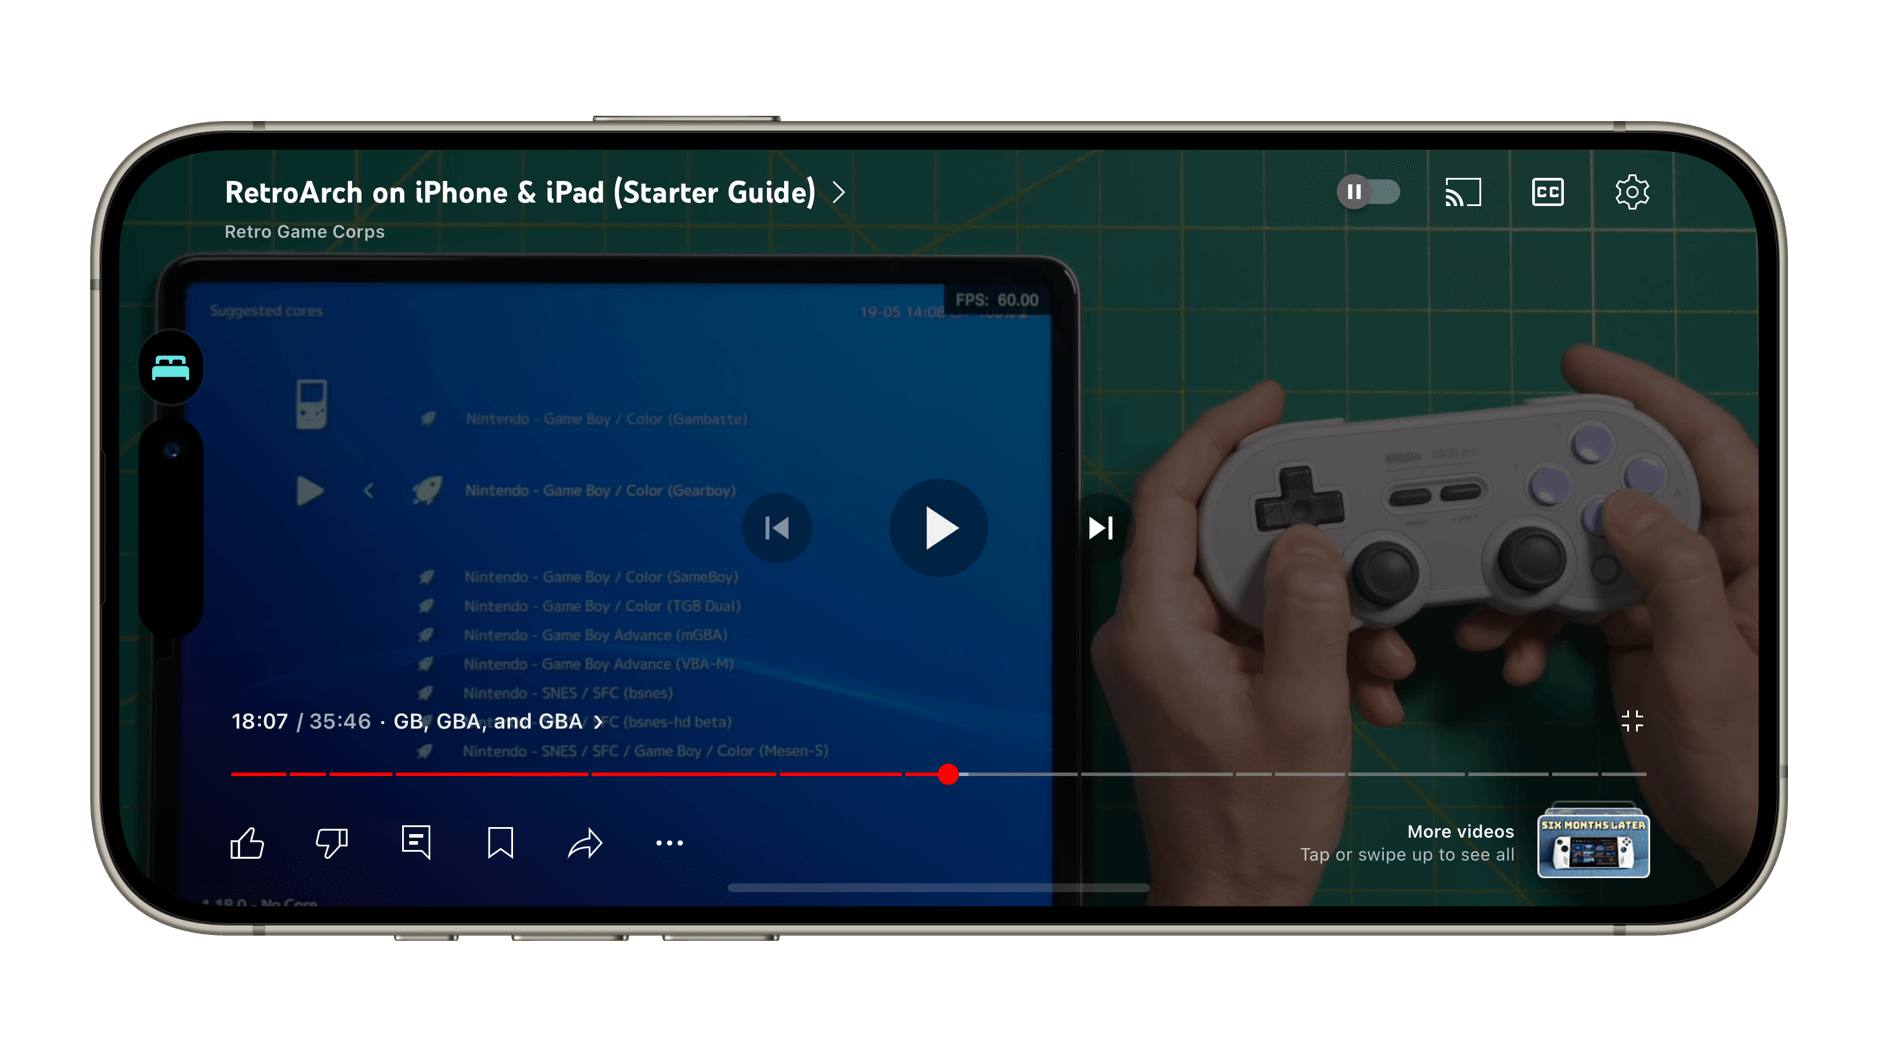 Das Bild zeigt einen Smartphone-Bildschirm mit einer Videoplayer-Oberfläche für den "RetroArch on iPhone & iPad (Starter Guide)" von Retro Game Corps. Der Videoplayer zeigt eine Liste von Spieletiteln, und eine Hand hält einen Spielcontroller, was darauf hindeutet, dass ein Mobilgerät zum Spielen von Retro-Spielen verwendet wird.